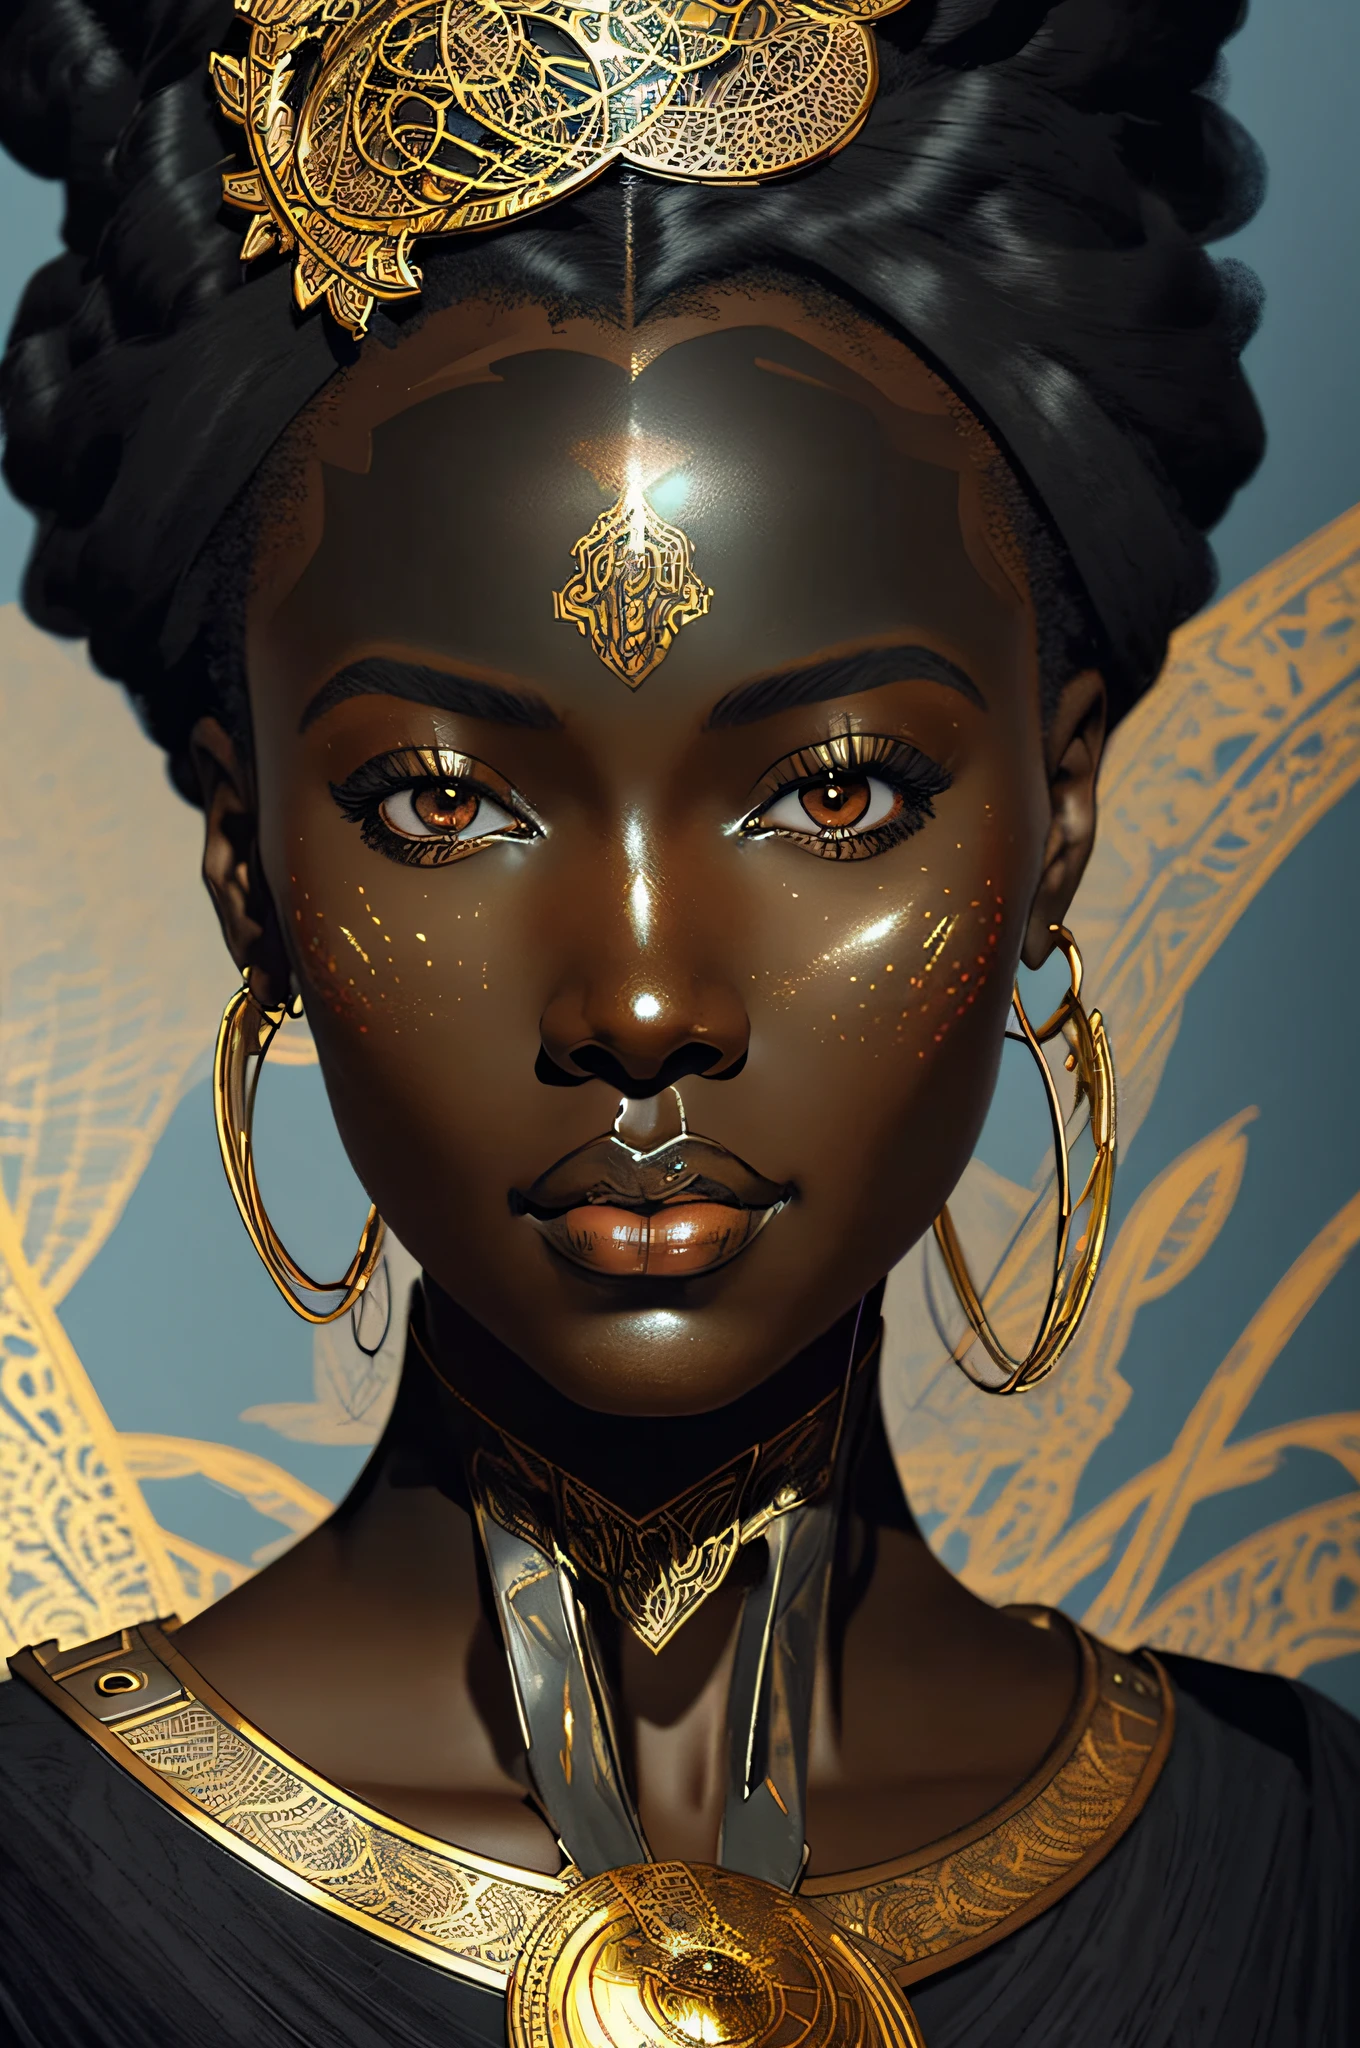 цифровая иллюстрация чернокожей африканской женщины в стиле модерн, стимпанк, аниме, красивое лицо, крупный масштаб, реалистичные пропорции, очень подробный, гладкий, Острый фокус, 8К, Трассировка лучей, цифровая живопись, концепт-арт иллюстрация, от Артгерм, в тренде на artstation, Sony A1